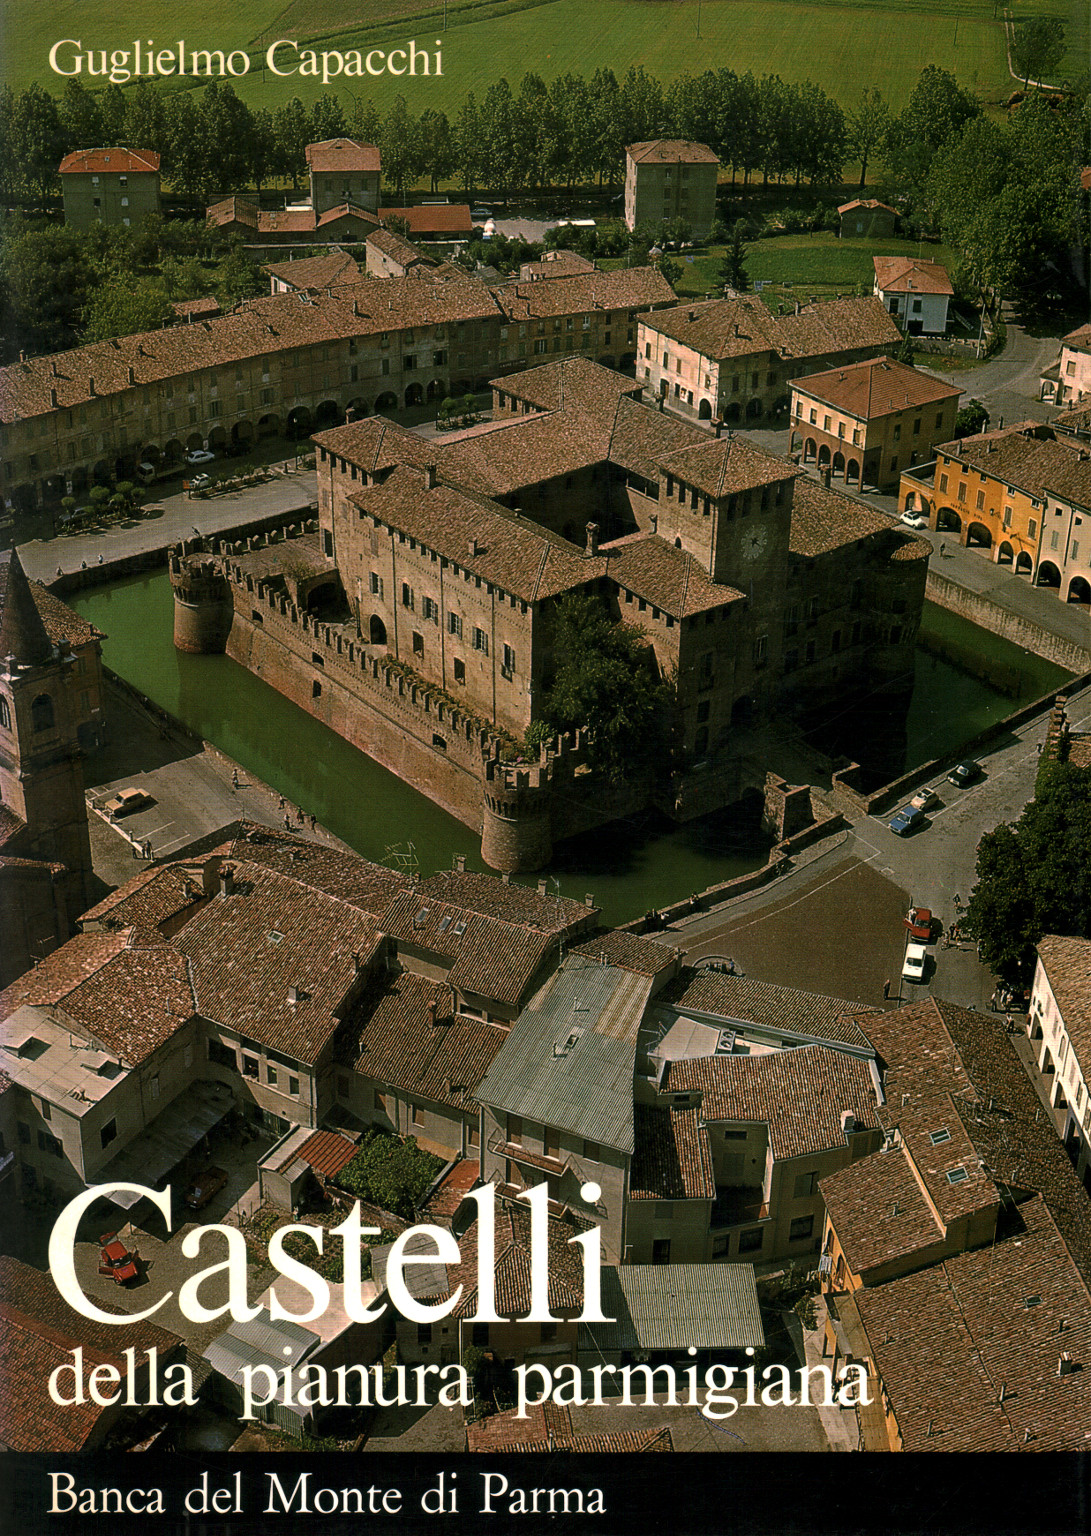 Castelli della pianura parmigiana, s.a.